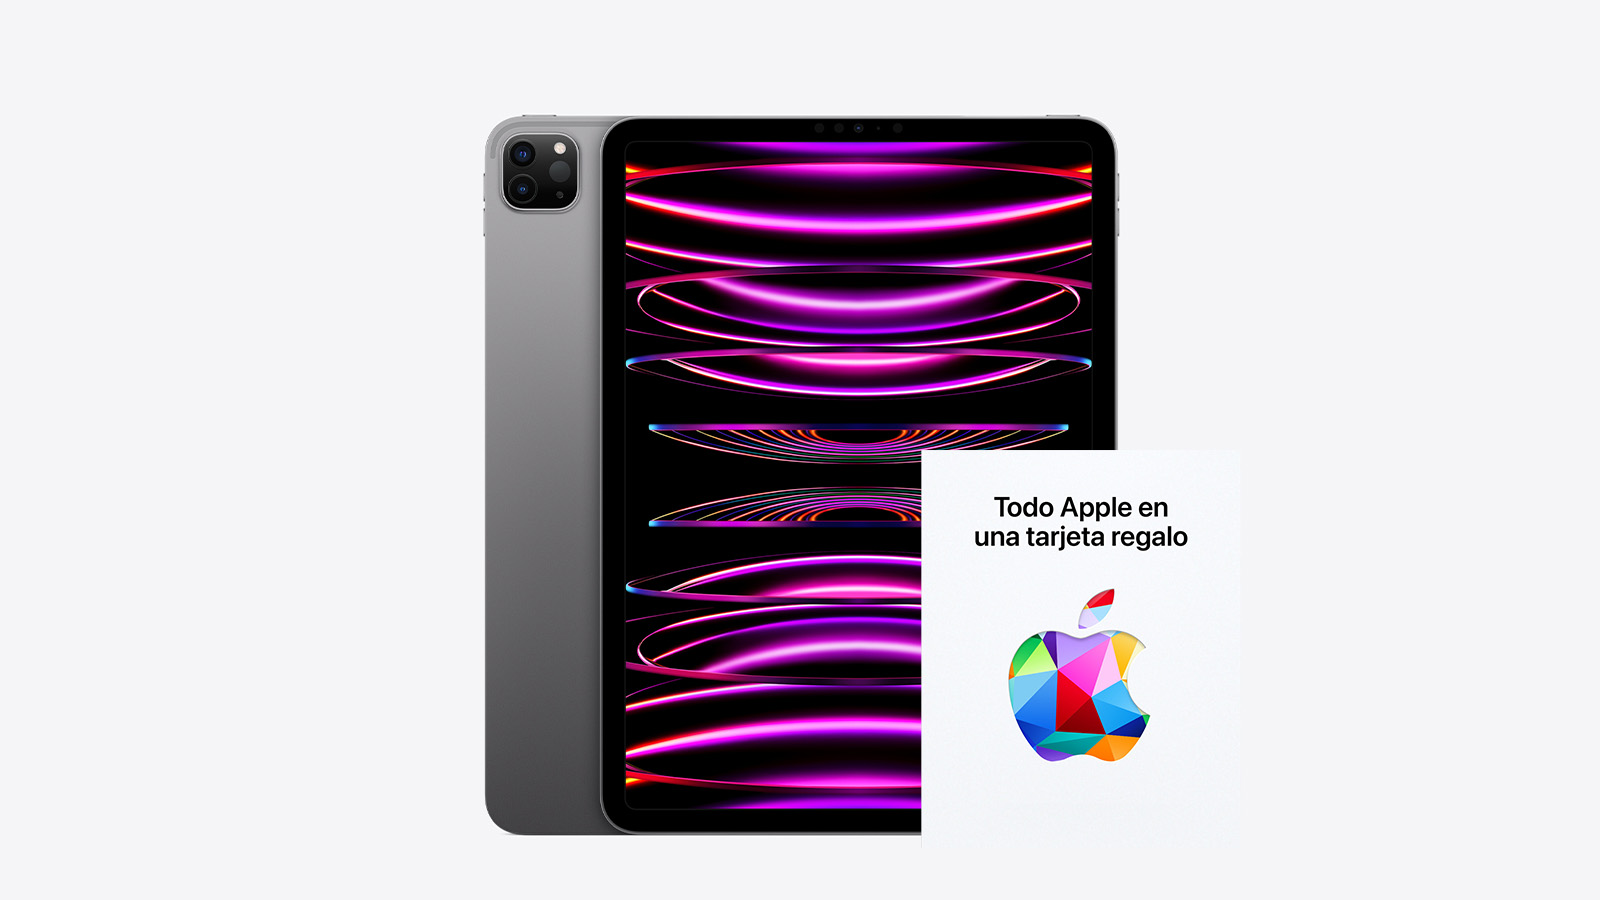 iPad Pro de 11" + tarjeta regalo